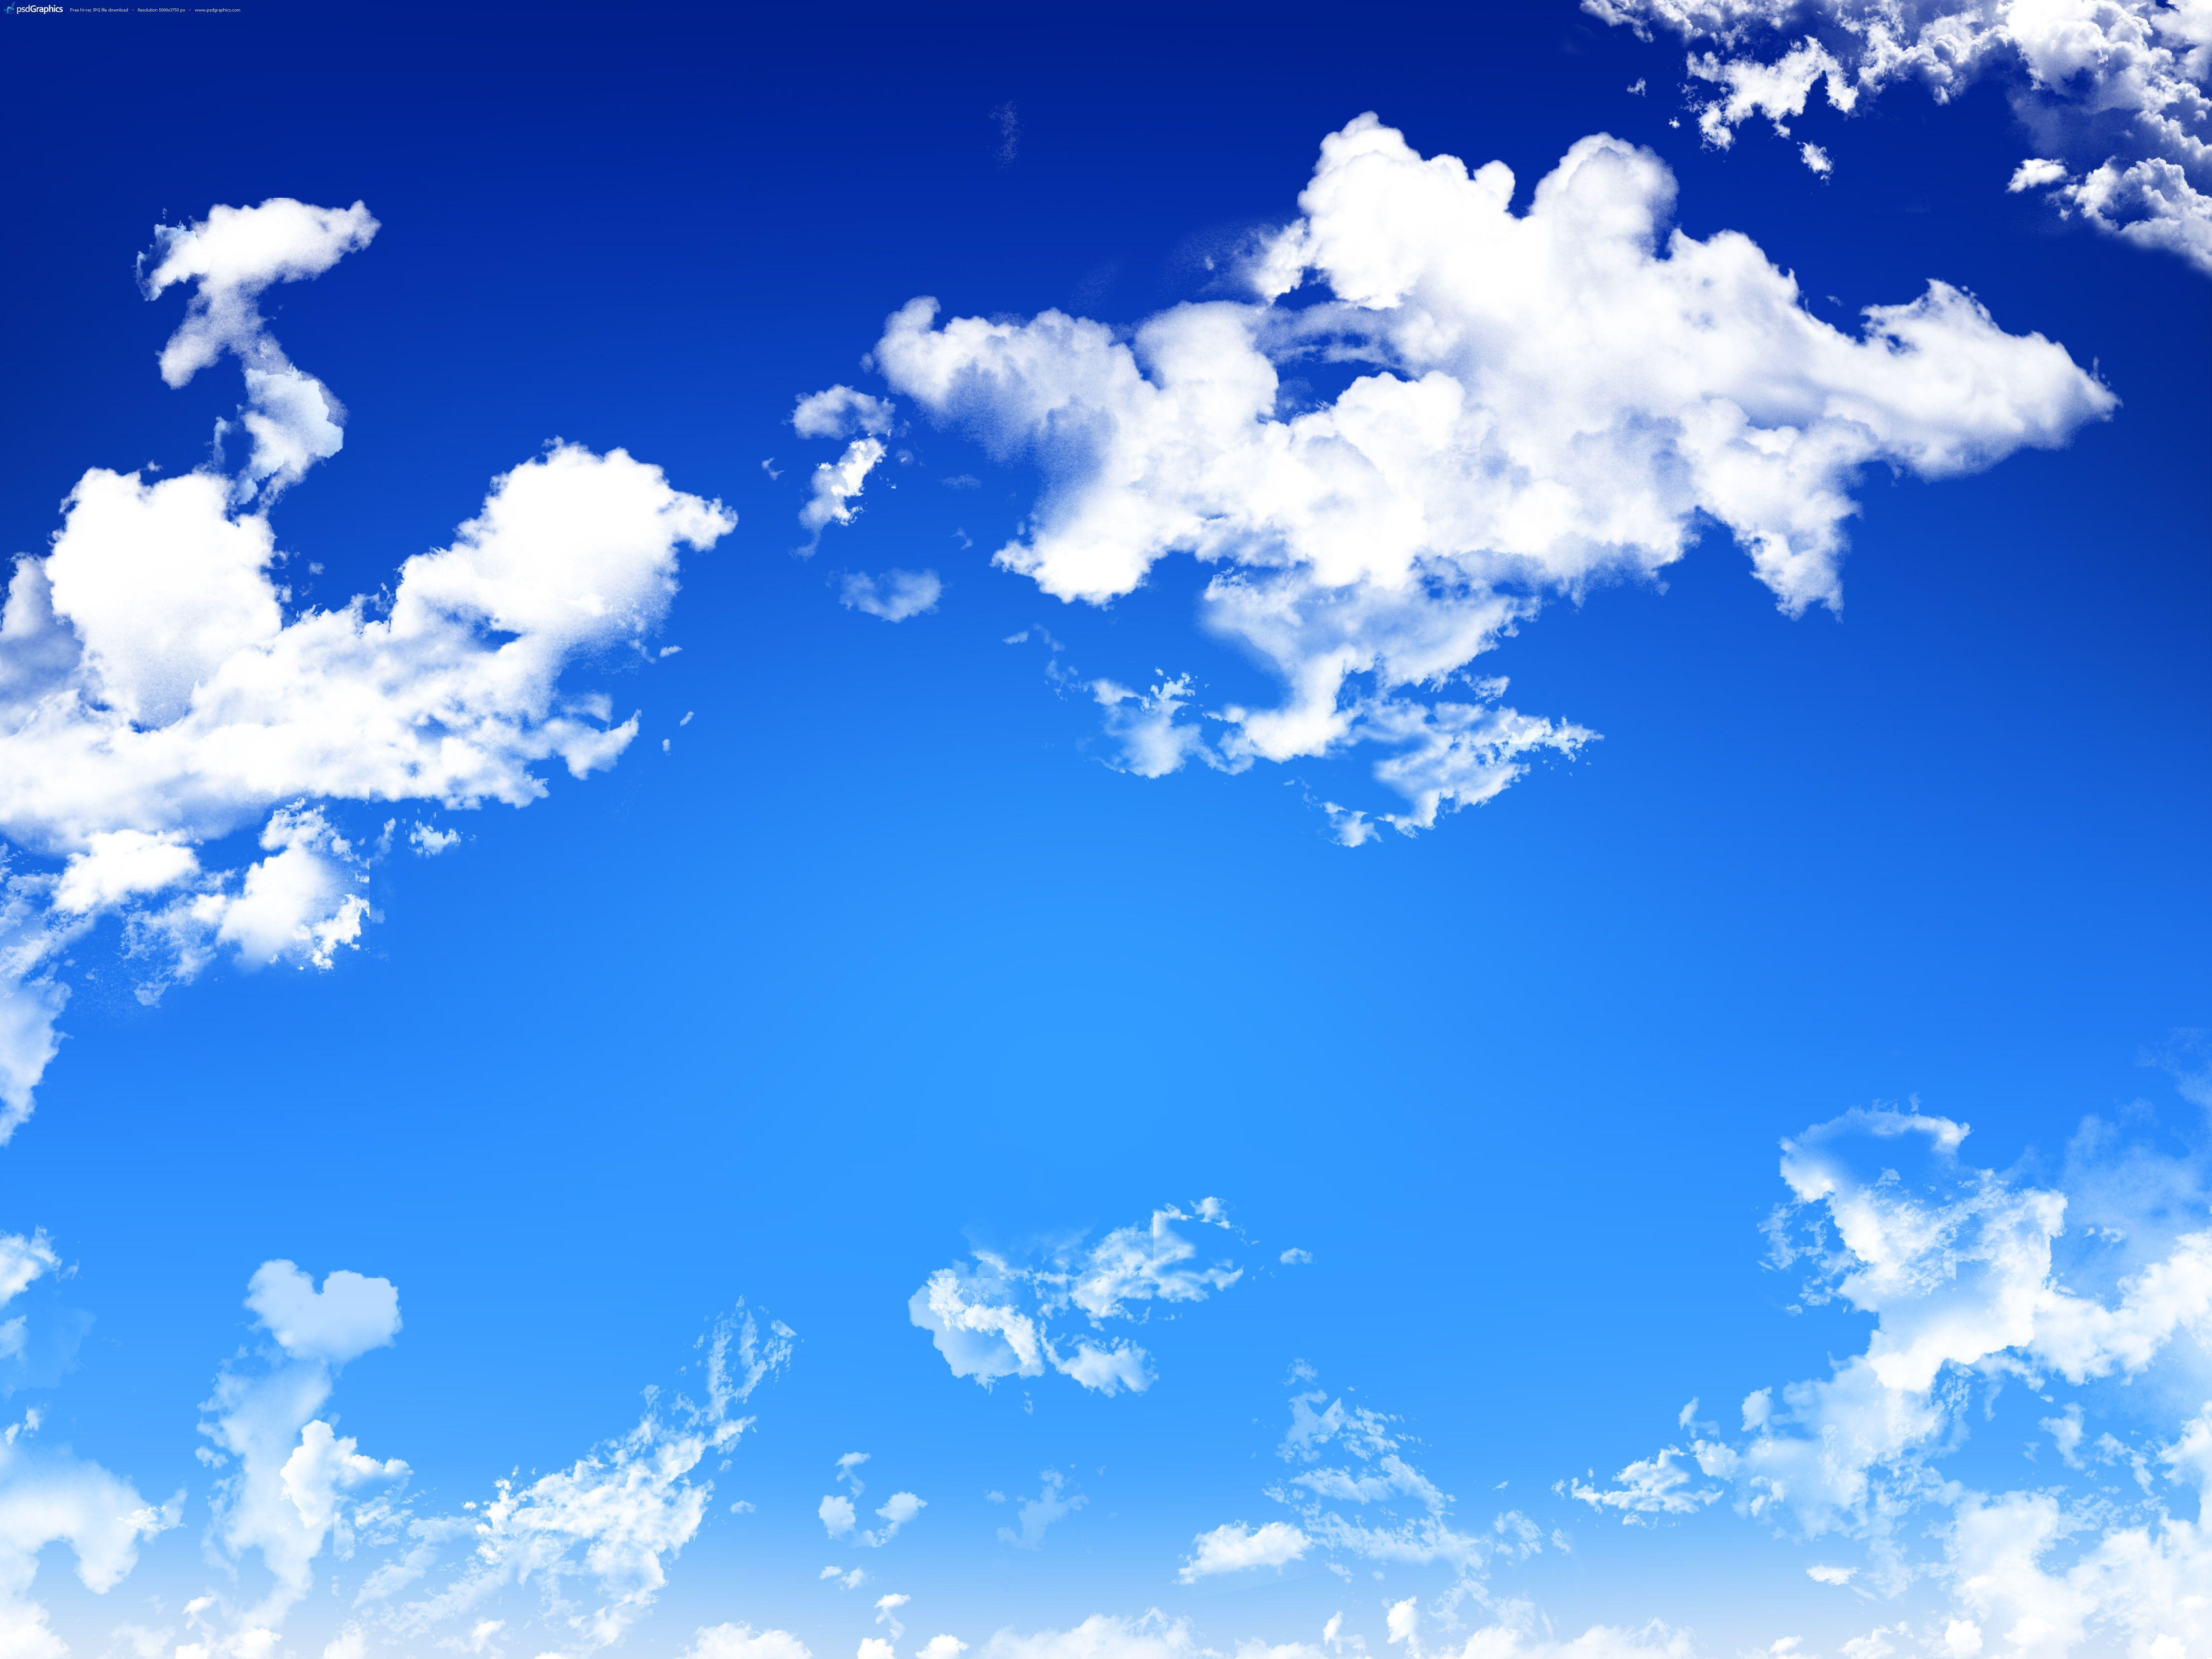 Đám mây: Đám mây là một trong những hiện tượng thiên nhiên đẹp nhất thế giới, mang đến sự ngạc nhiên và thoả mãn cho mọi người. Hãy cùng chiêm ngưỡng những mây hình dáng lạ thường, đầy phong cách và tự do, tạo nên một khung cảnh huyền ảo và đầy màu sắc.